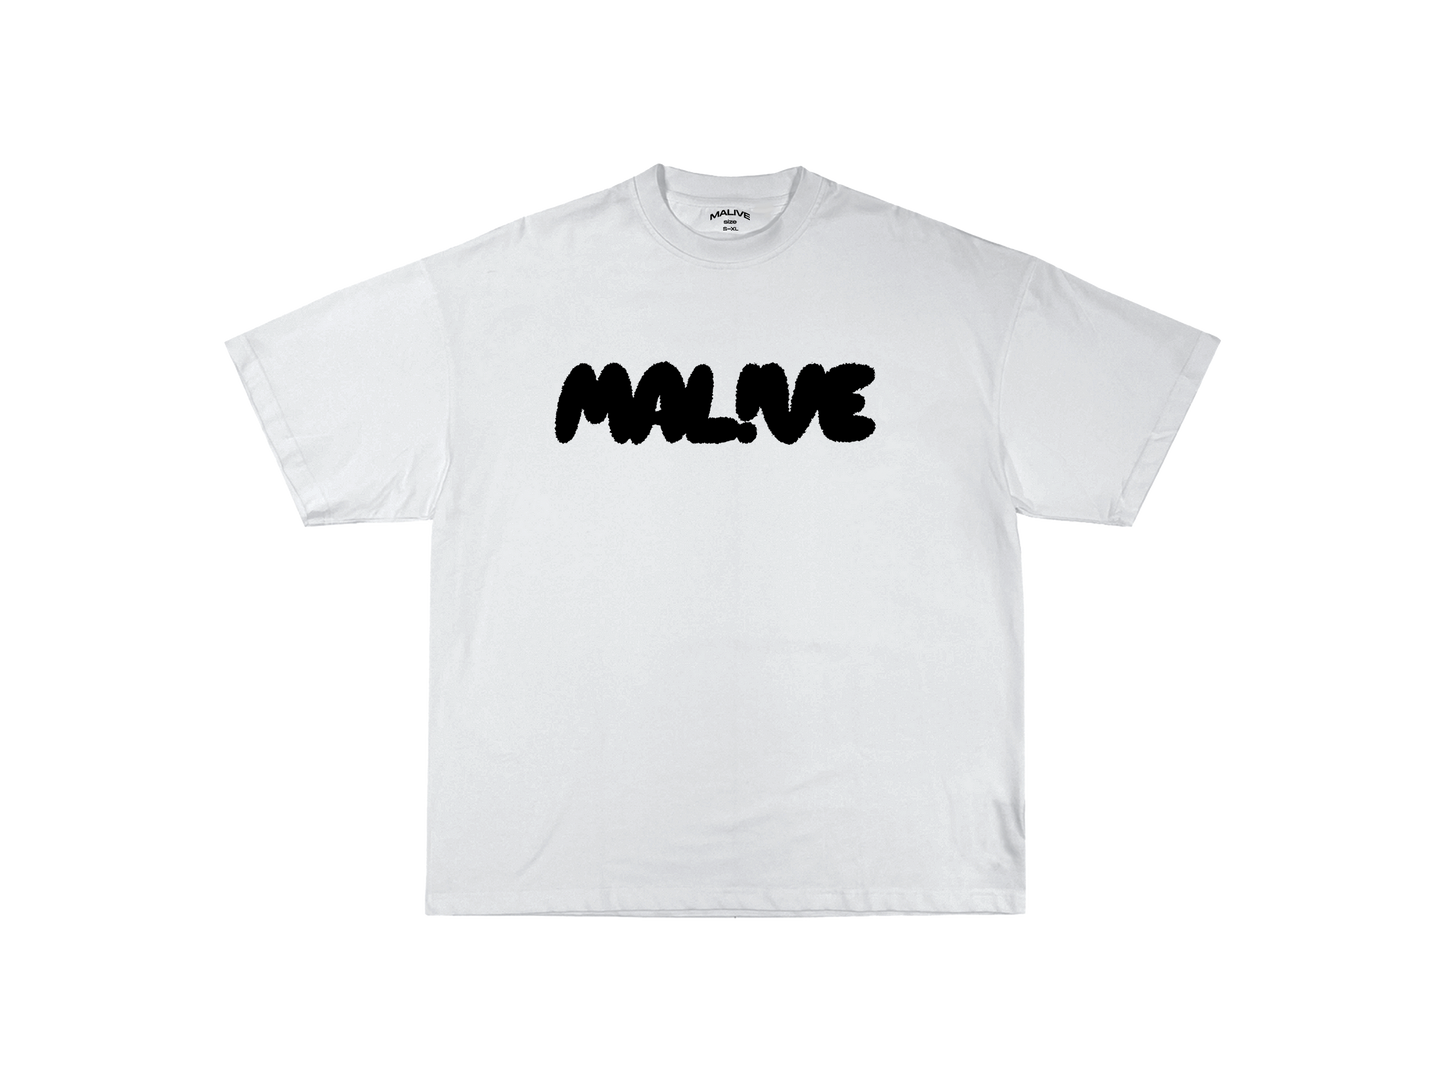 Malive Vibrated T-Shirt